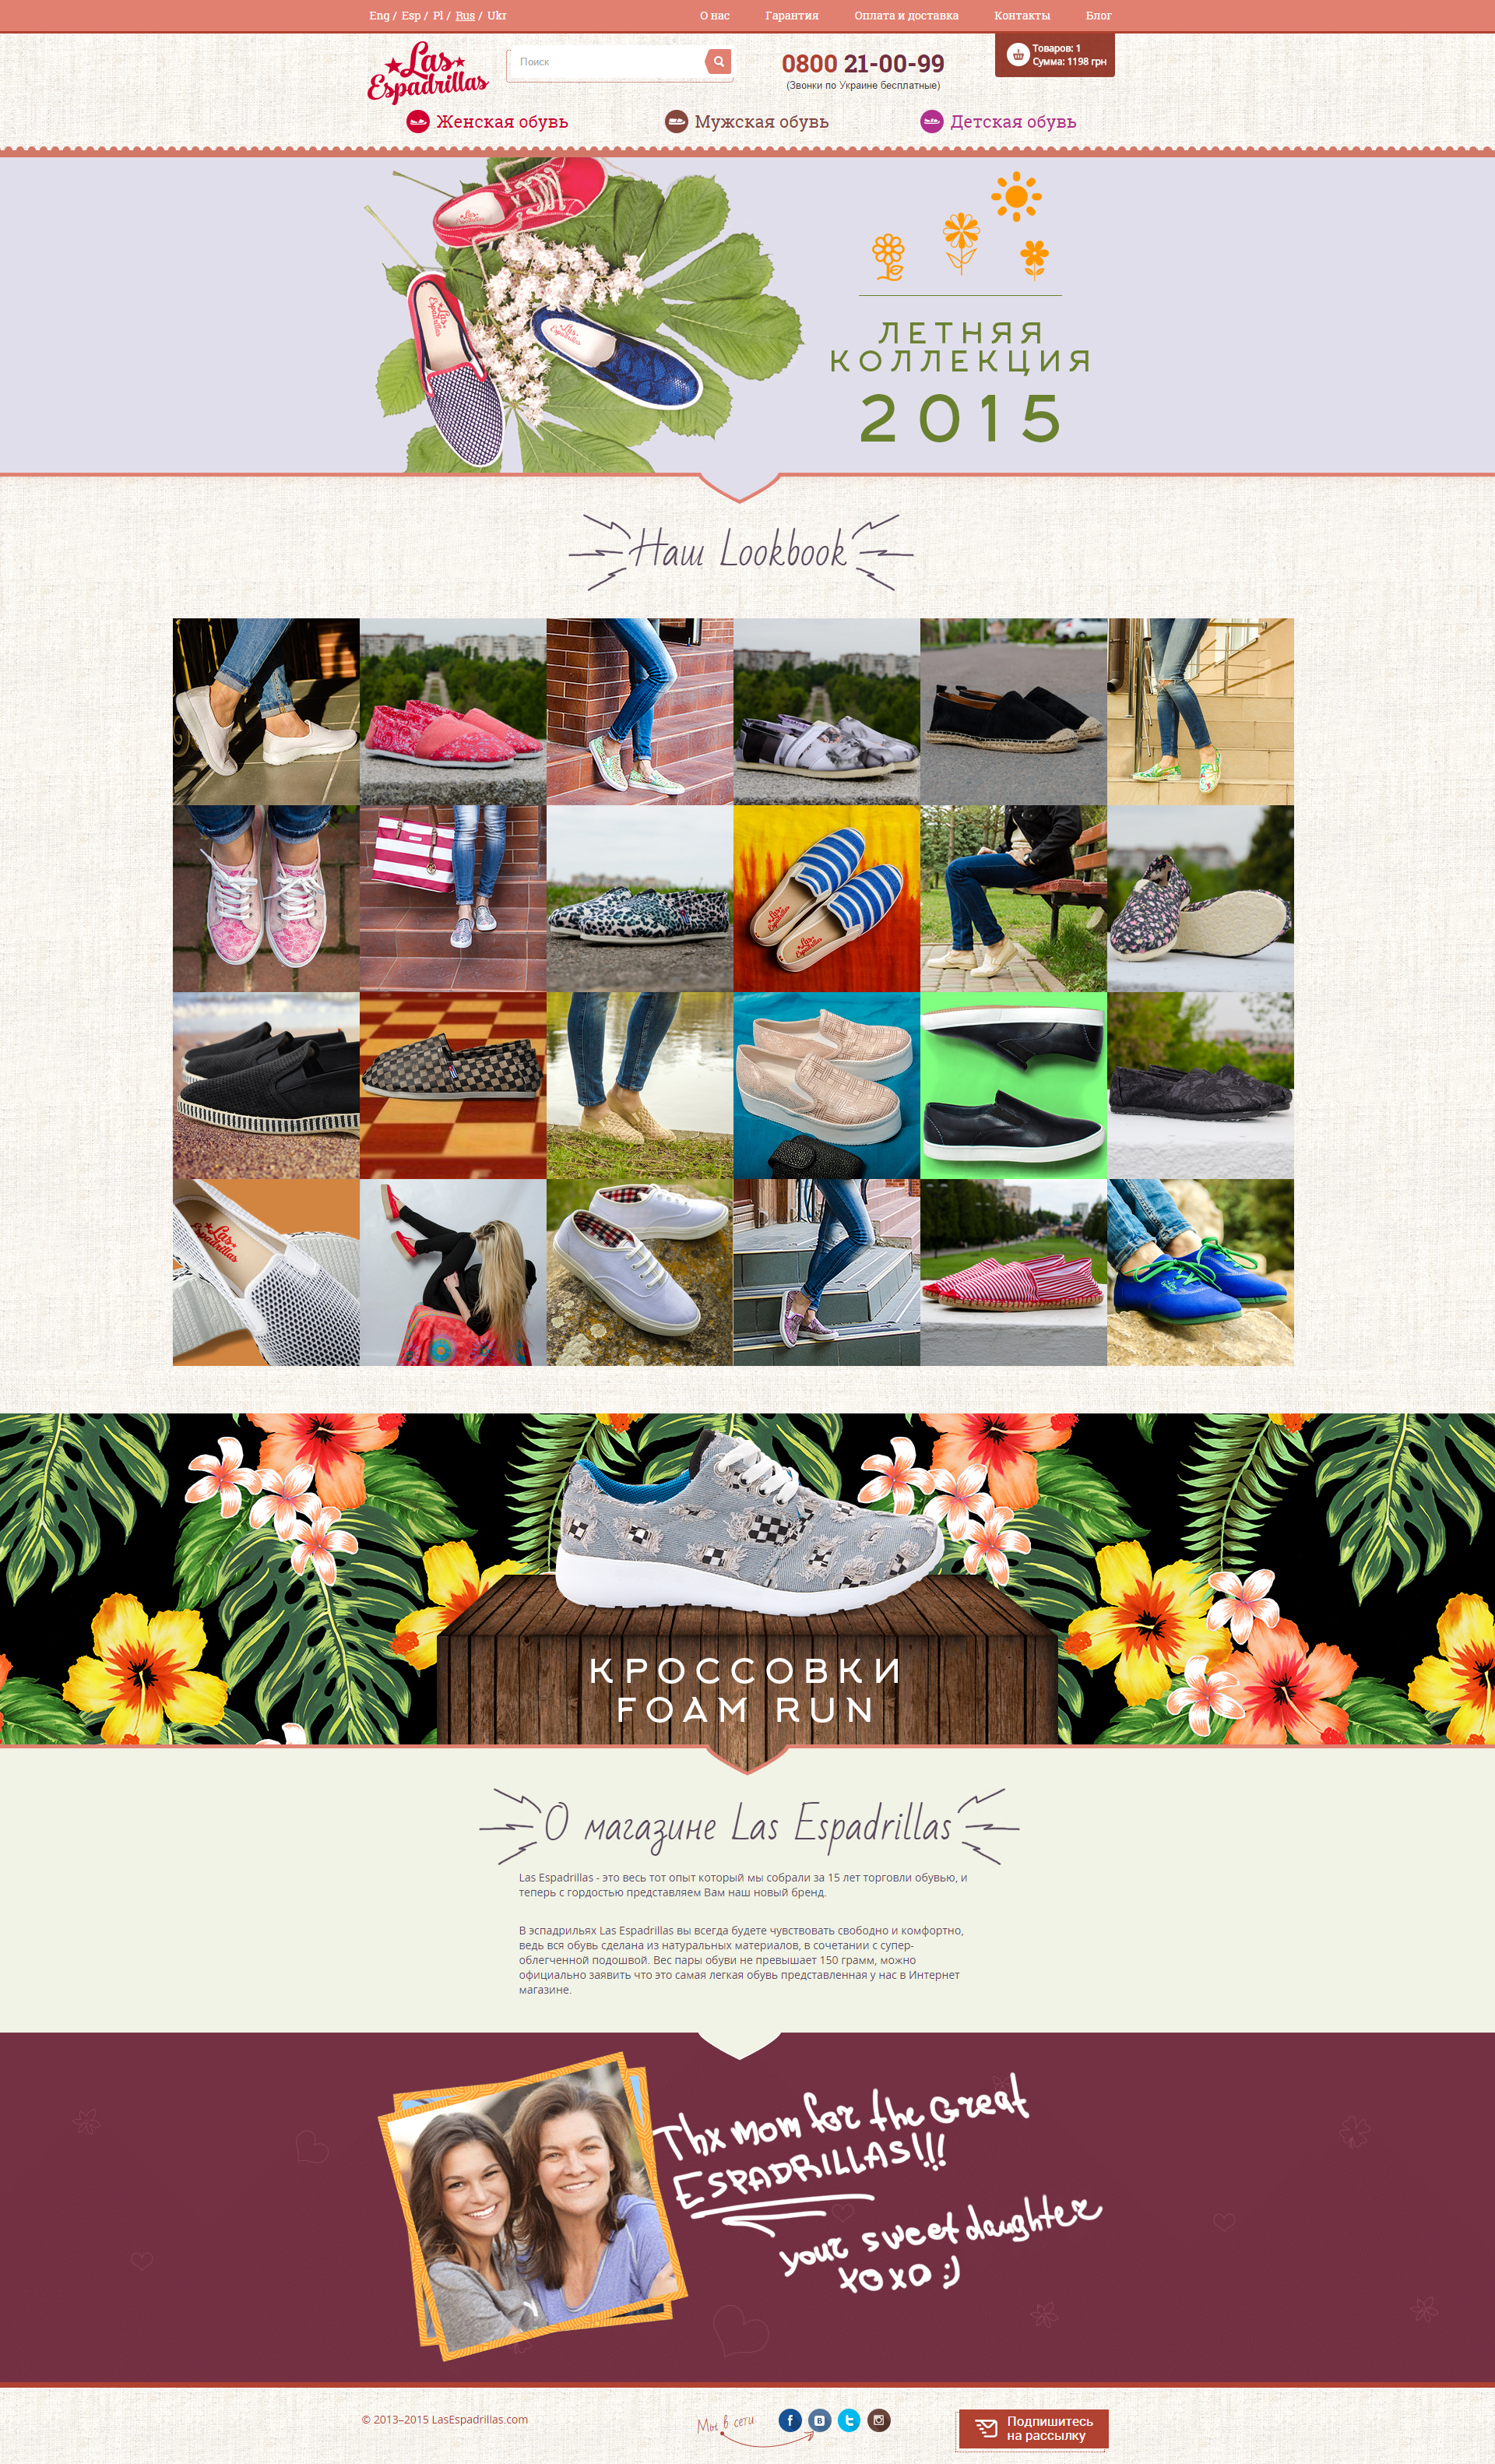 Online store of shoes-Las Espadrillas